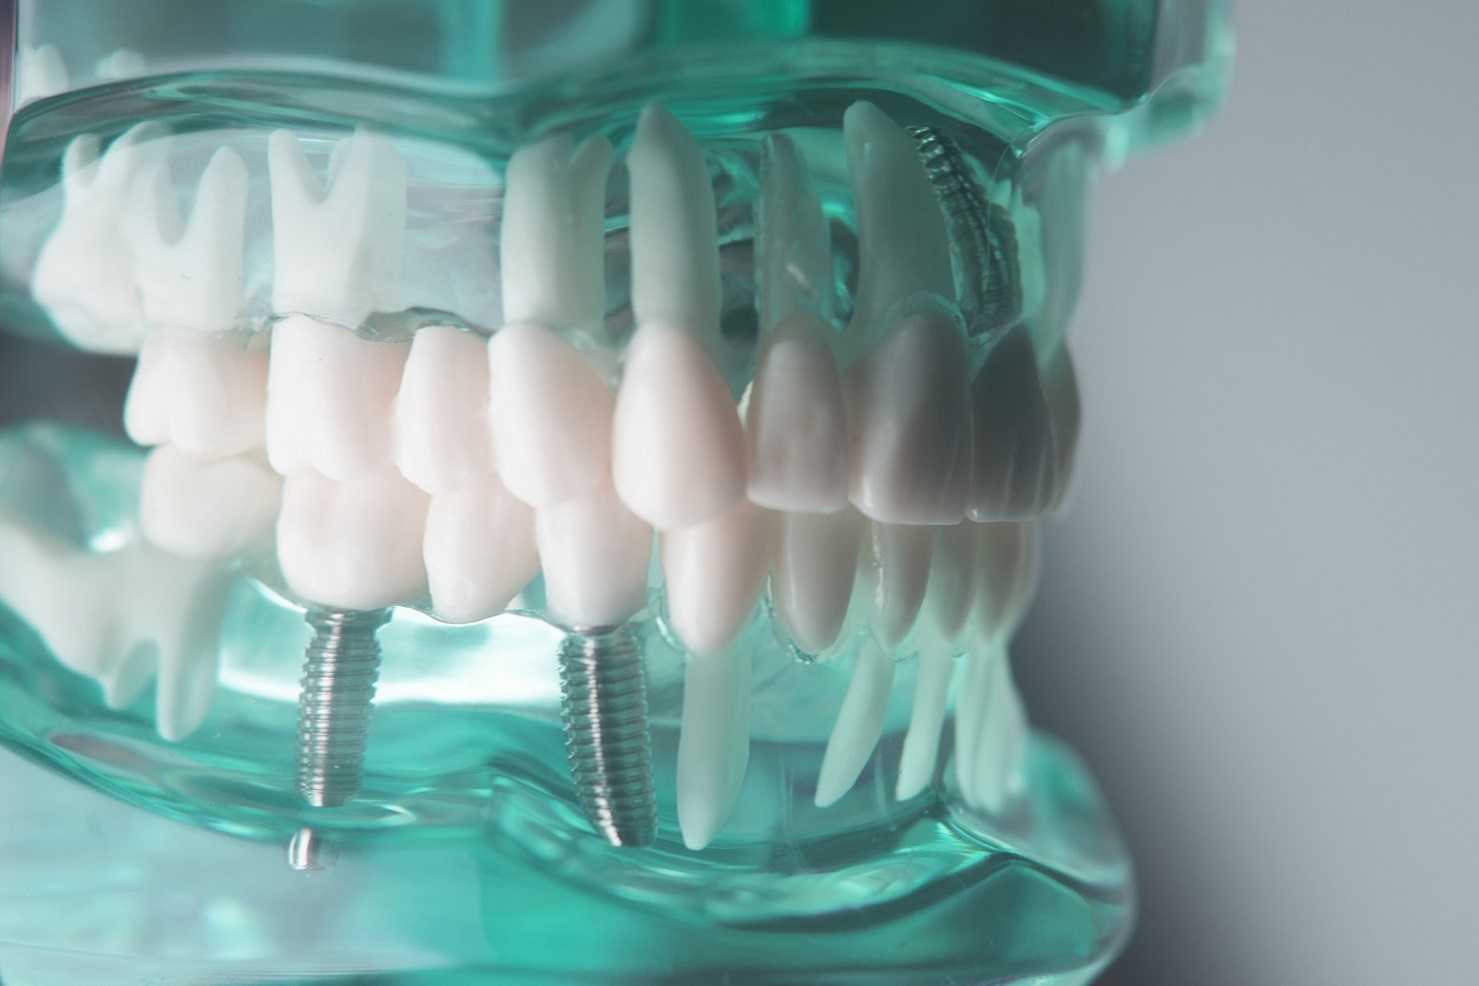 “مرعب” 7 حقائق غريبة عن الأسنان قد تعرفها لأول مرة.. تعد كبصمة مثل الأصبع